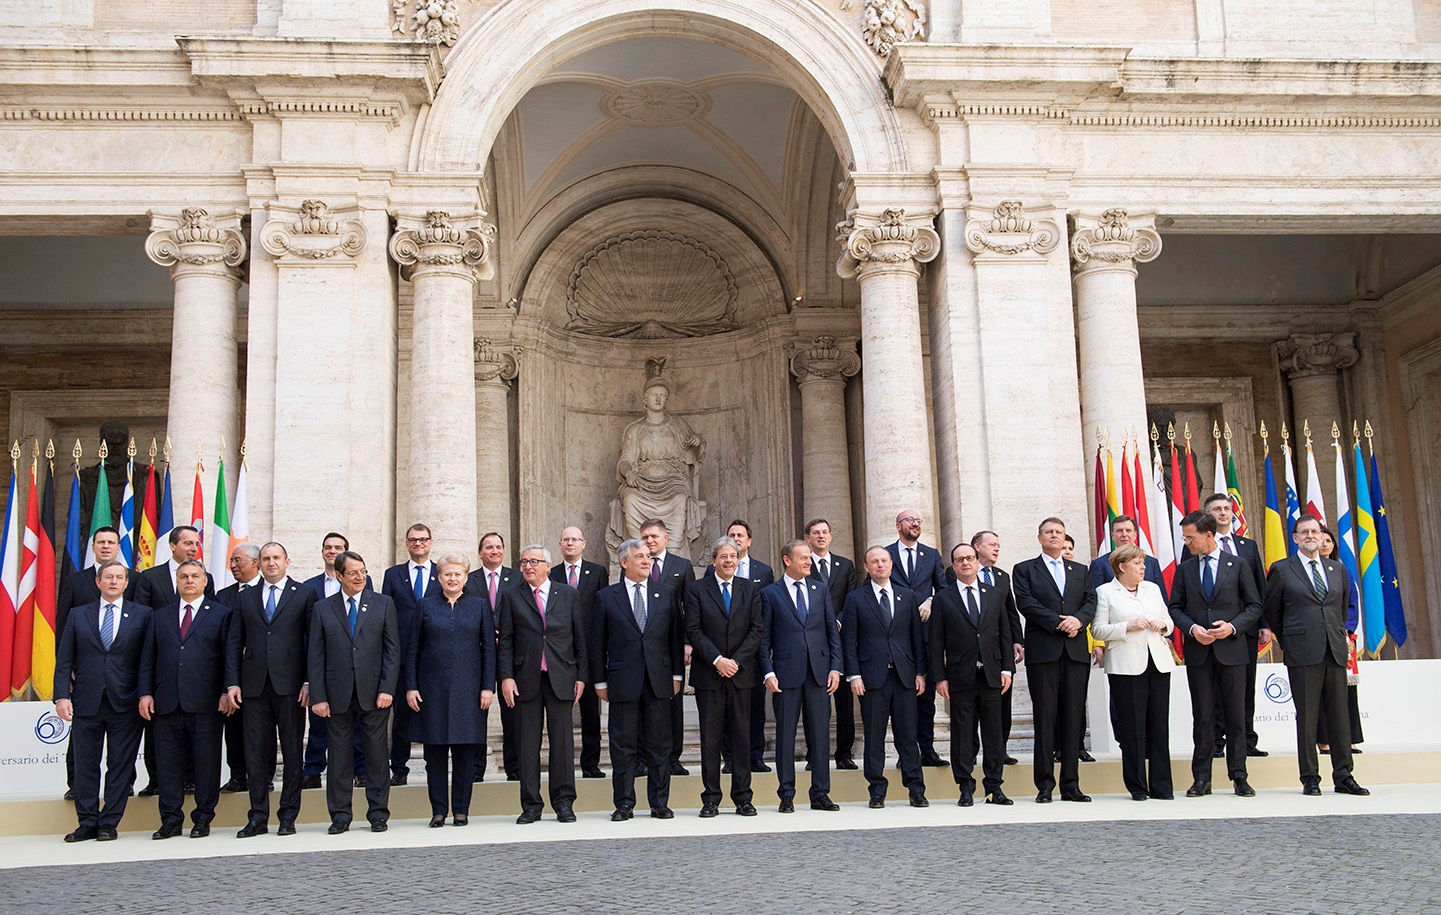 صورة تذكارية للزعماء الأوروبيين المشاركين في القمة الأوروبي الخاصة في الذكرى الستين لتوقيع معاهدتي روما أمام قصر "الكامبيدوليو" بالعاصمة الايطالية